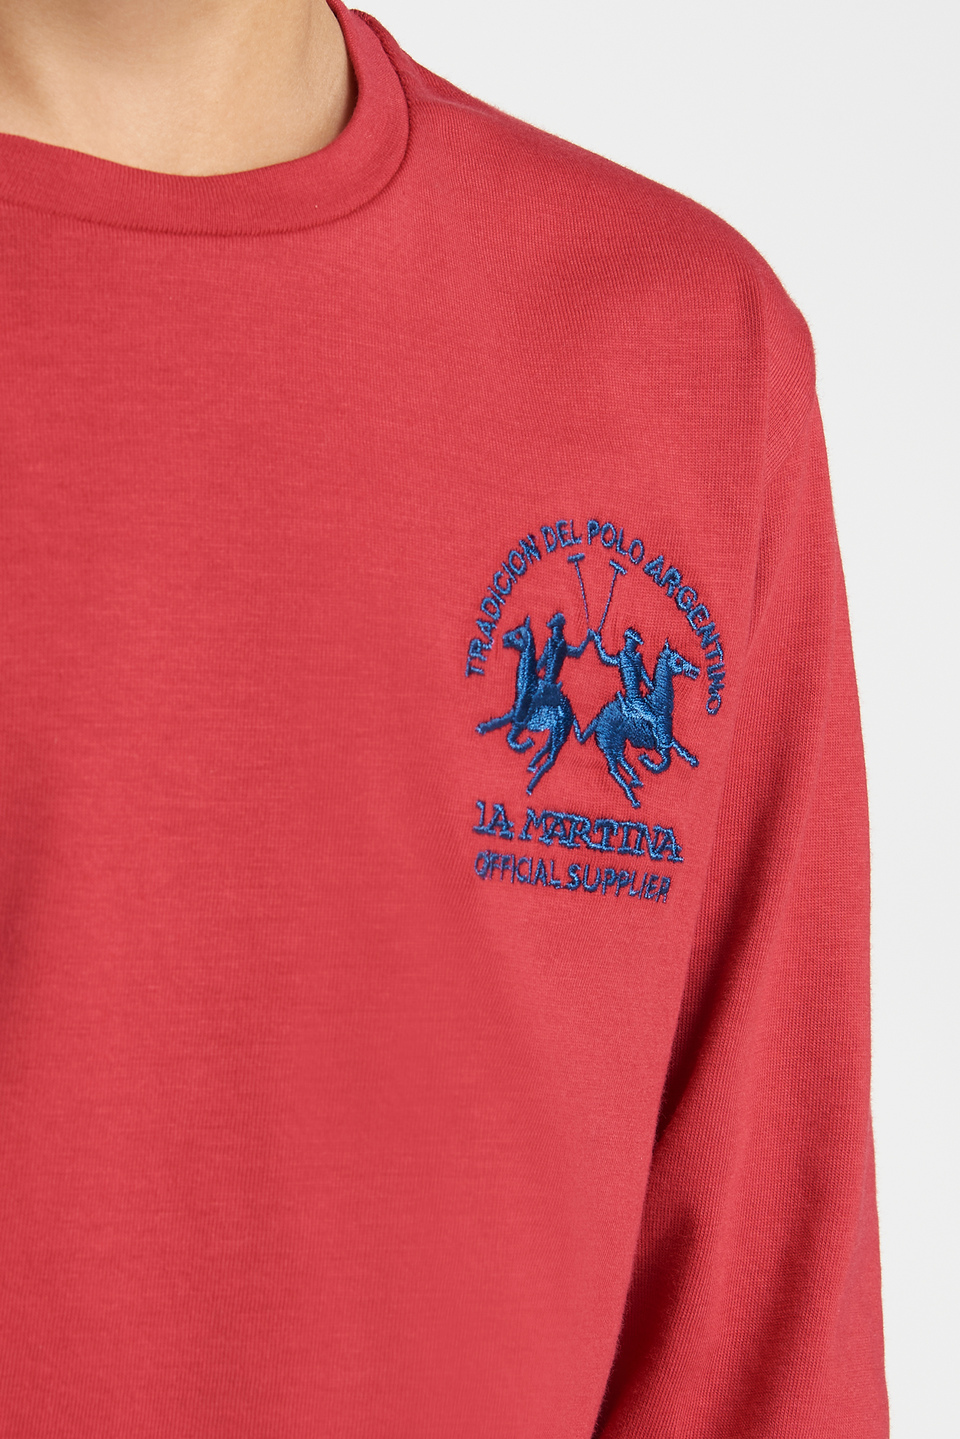 T-shirt uni à manches longues et bande | La Martina - Official Online Shop